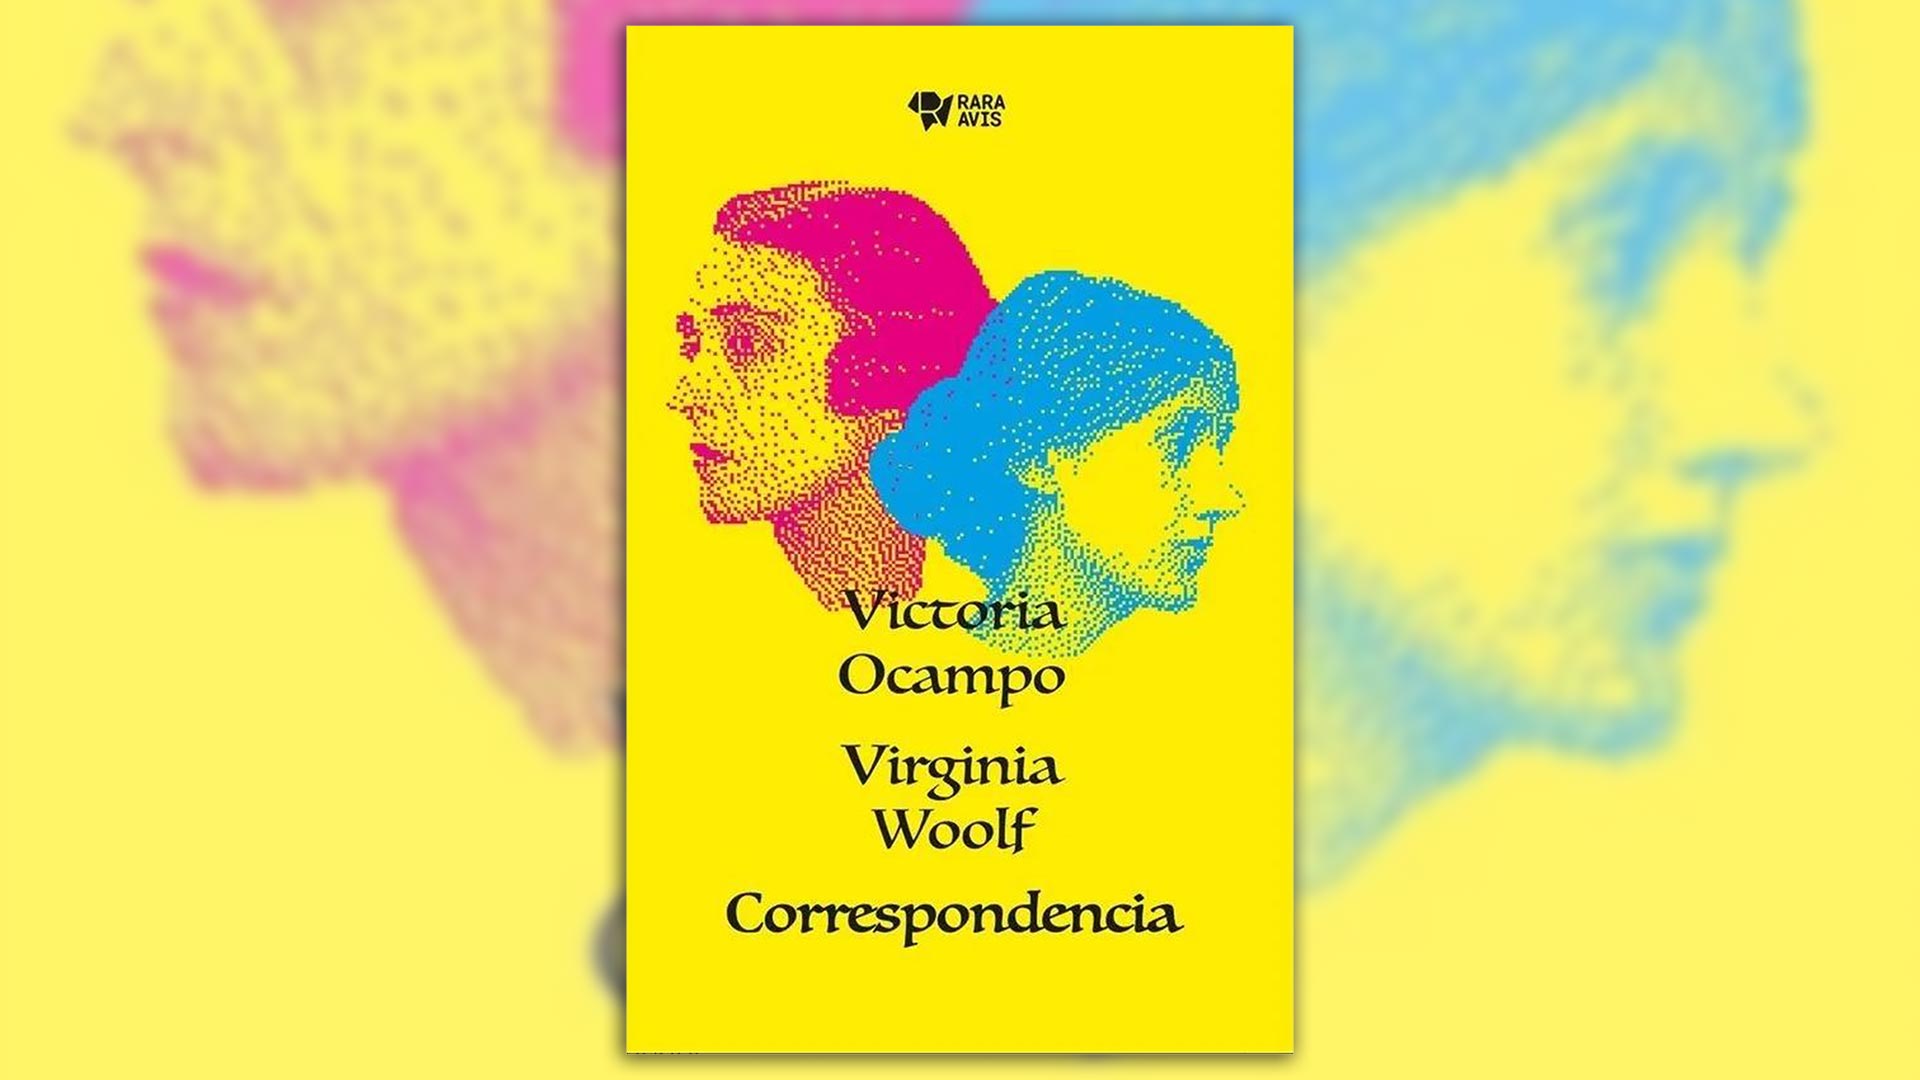  Victoria Ocampo- Virginia Woolf. Correspondencia (Rara Avis)